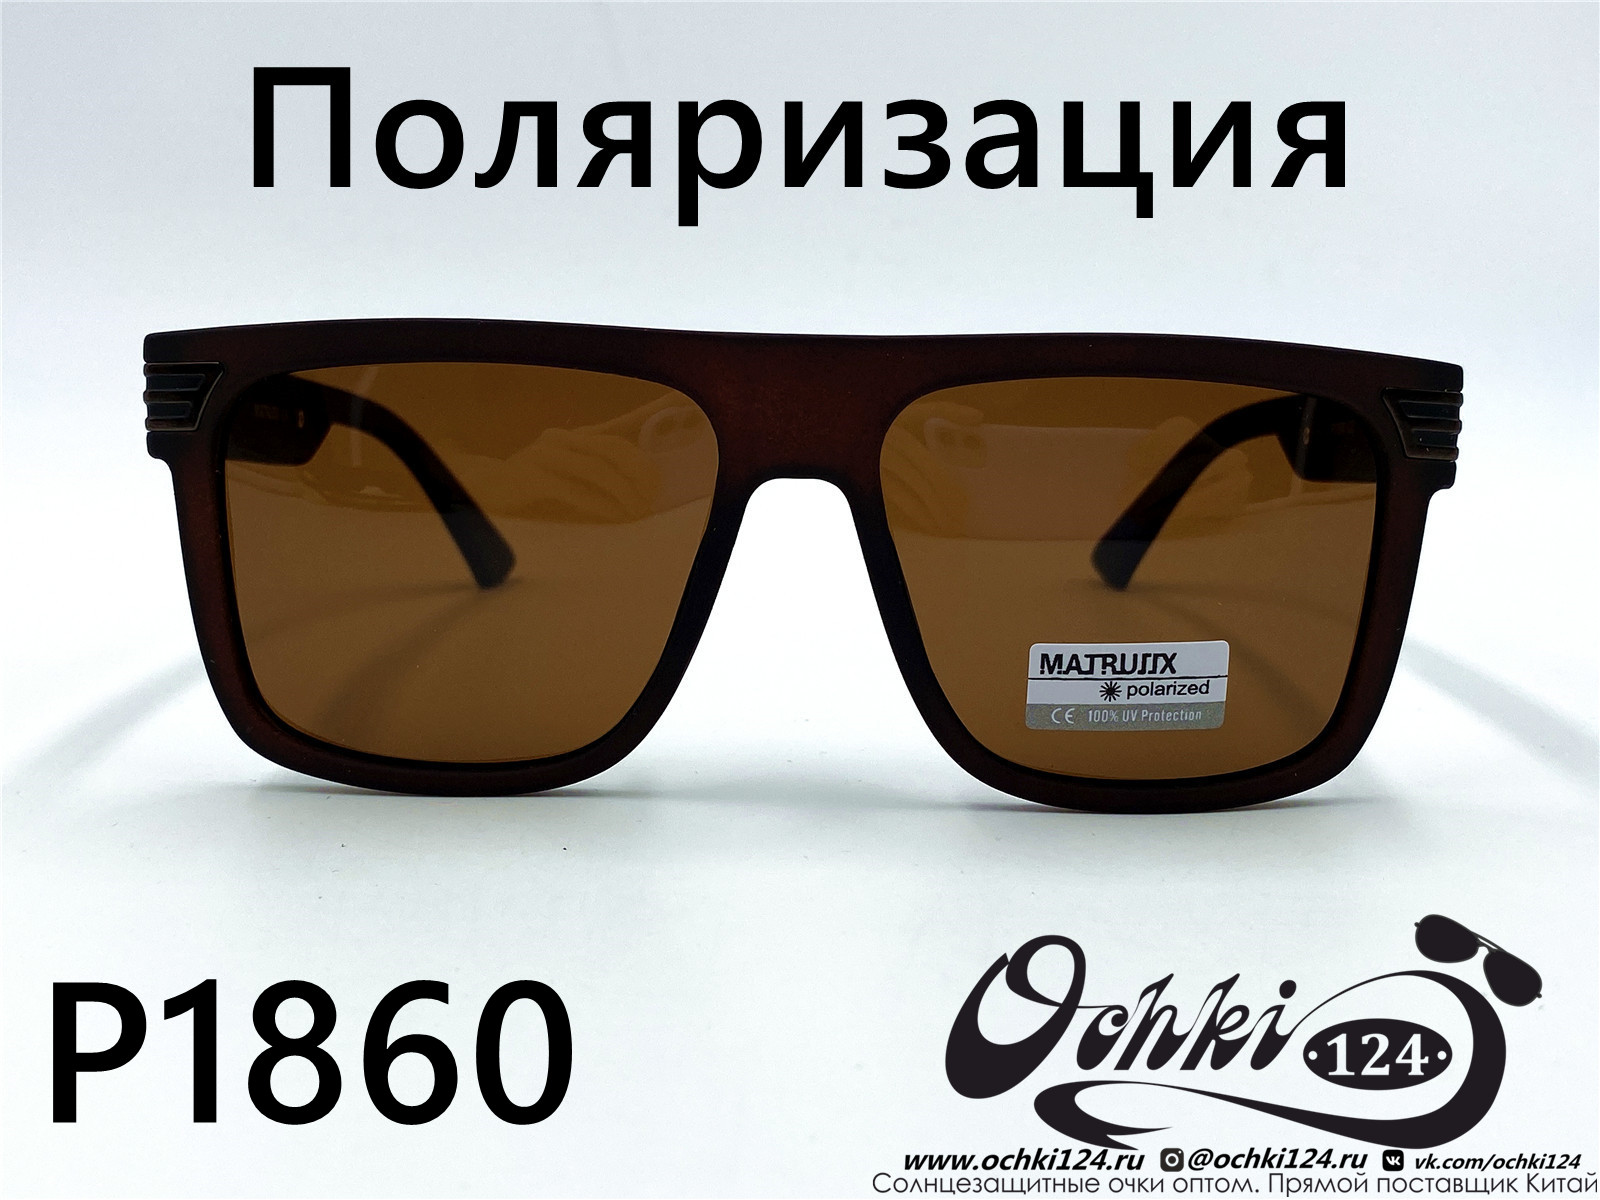  Солнцезащитные очки картинка 2022 Мужские Поляризованные Квадратные Matlrxs P1860-2 